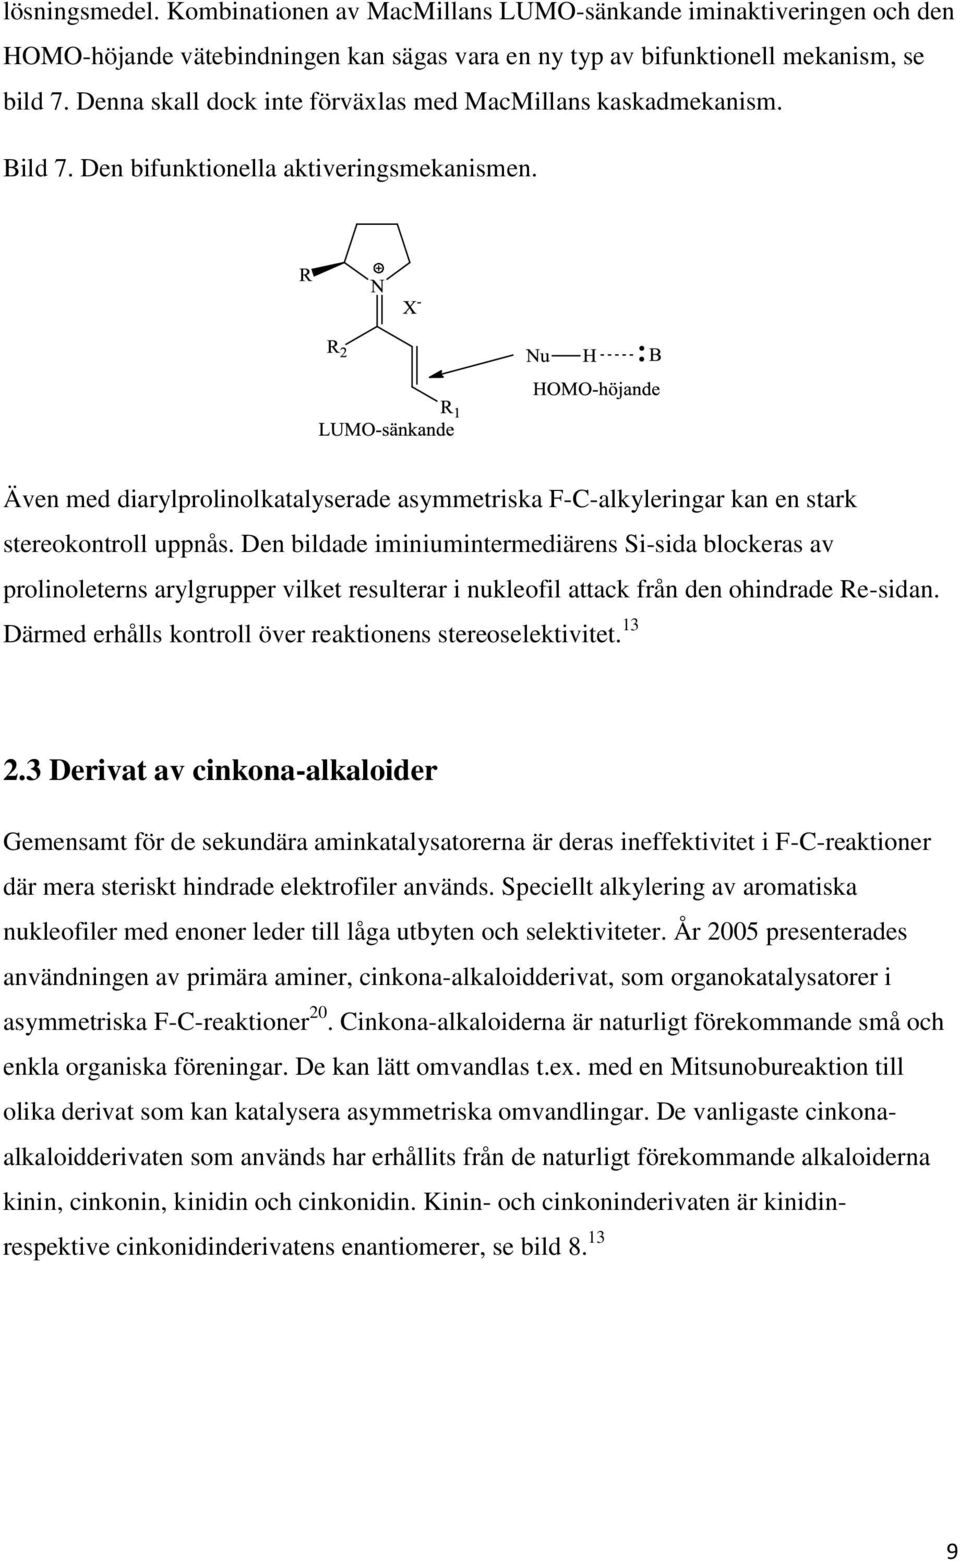 Även med diarylprolinolkatalyserade asymmetriska F-C-alkyleringar kan en stark stereokontroll uppnås.